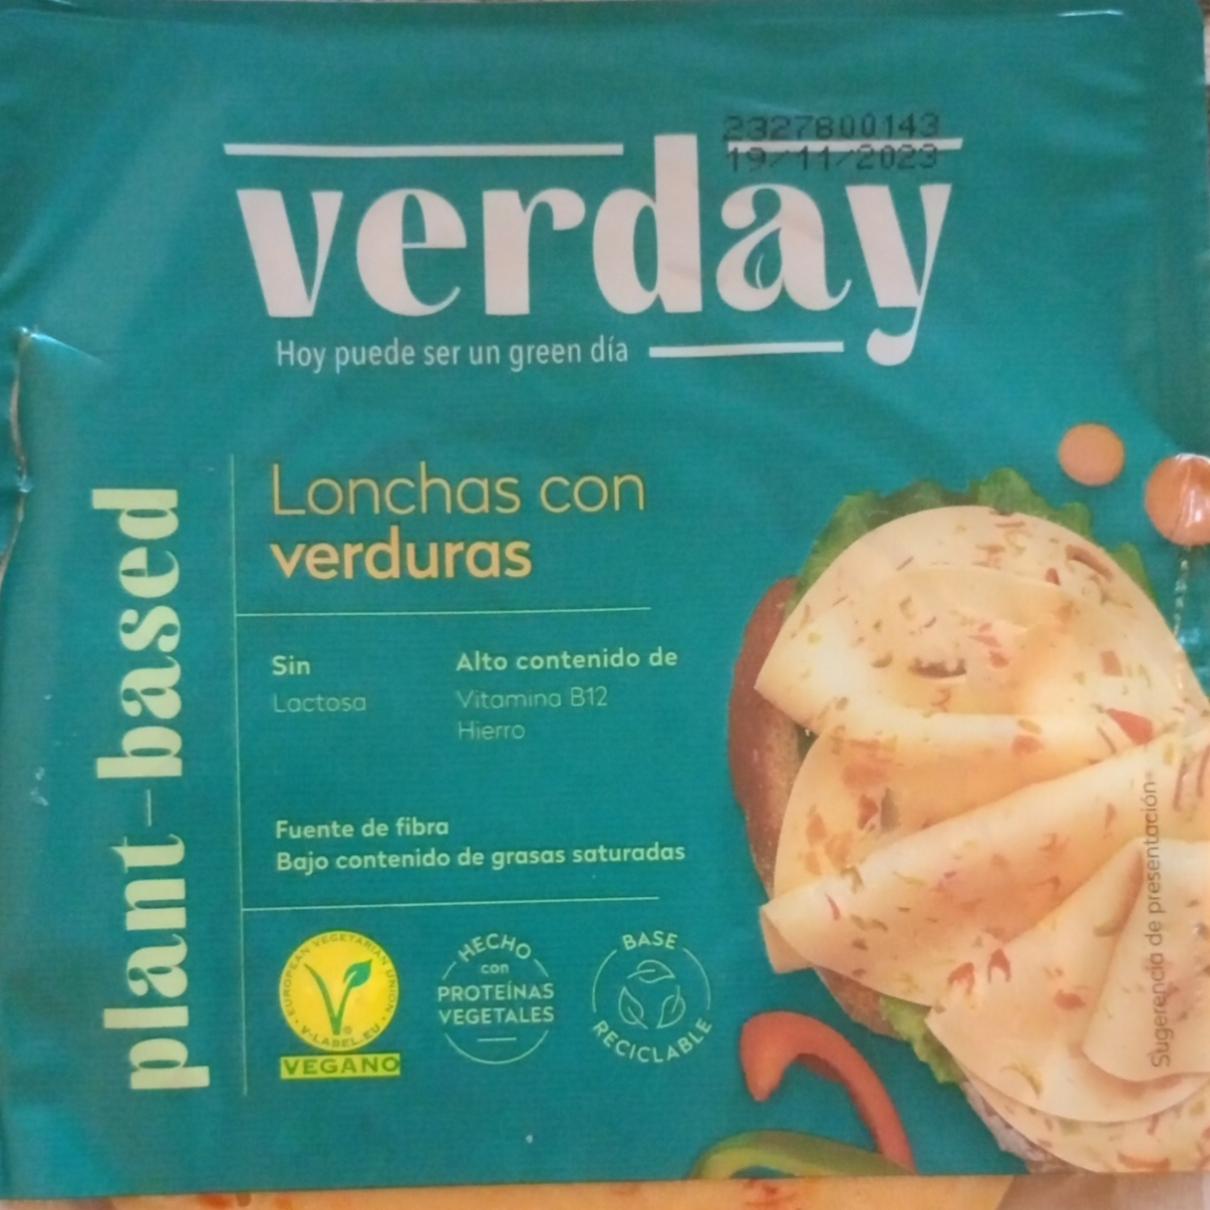 Zdjęcia - Lonchas con verduras Verday